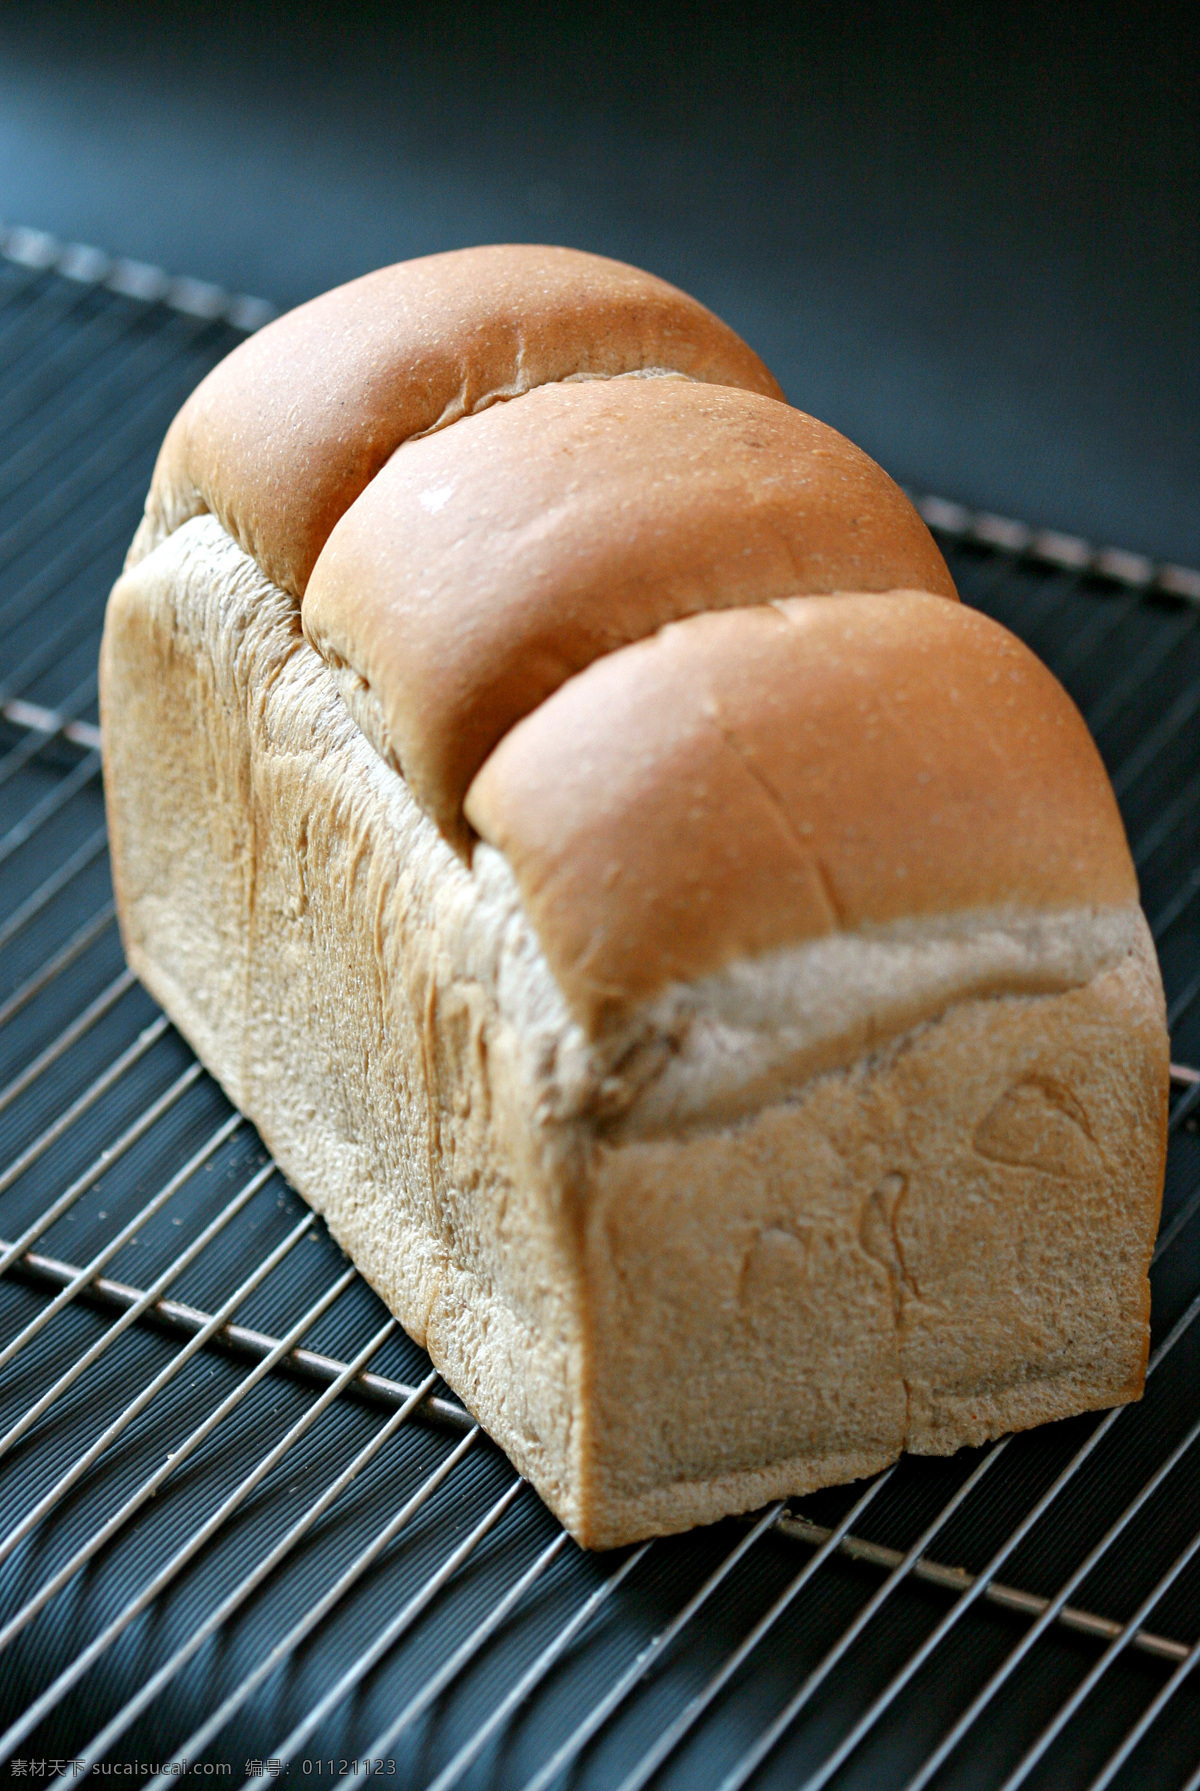 手撕面包 手撕包 面包 美味面包 食物 诱人面包 西餐美食 餐饮美食